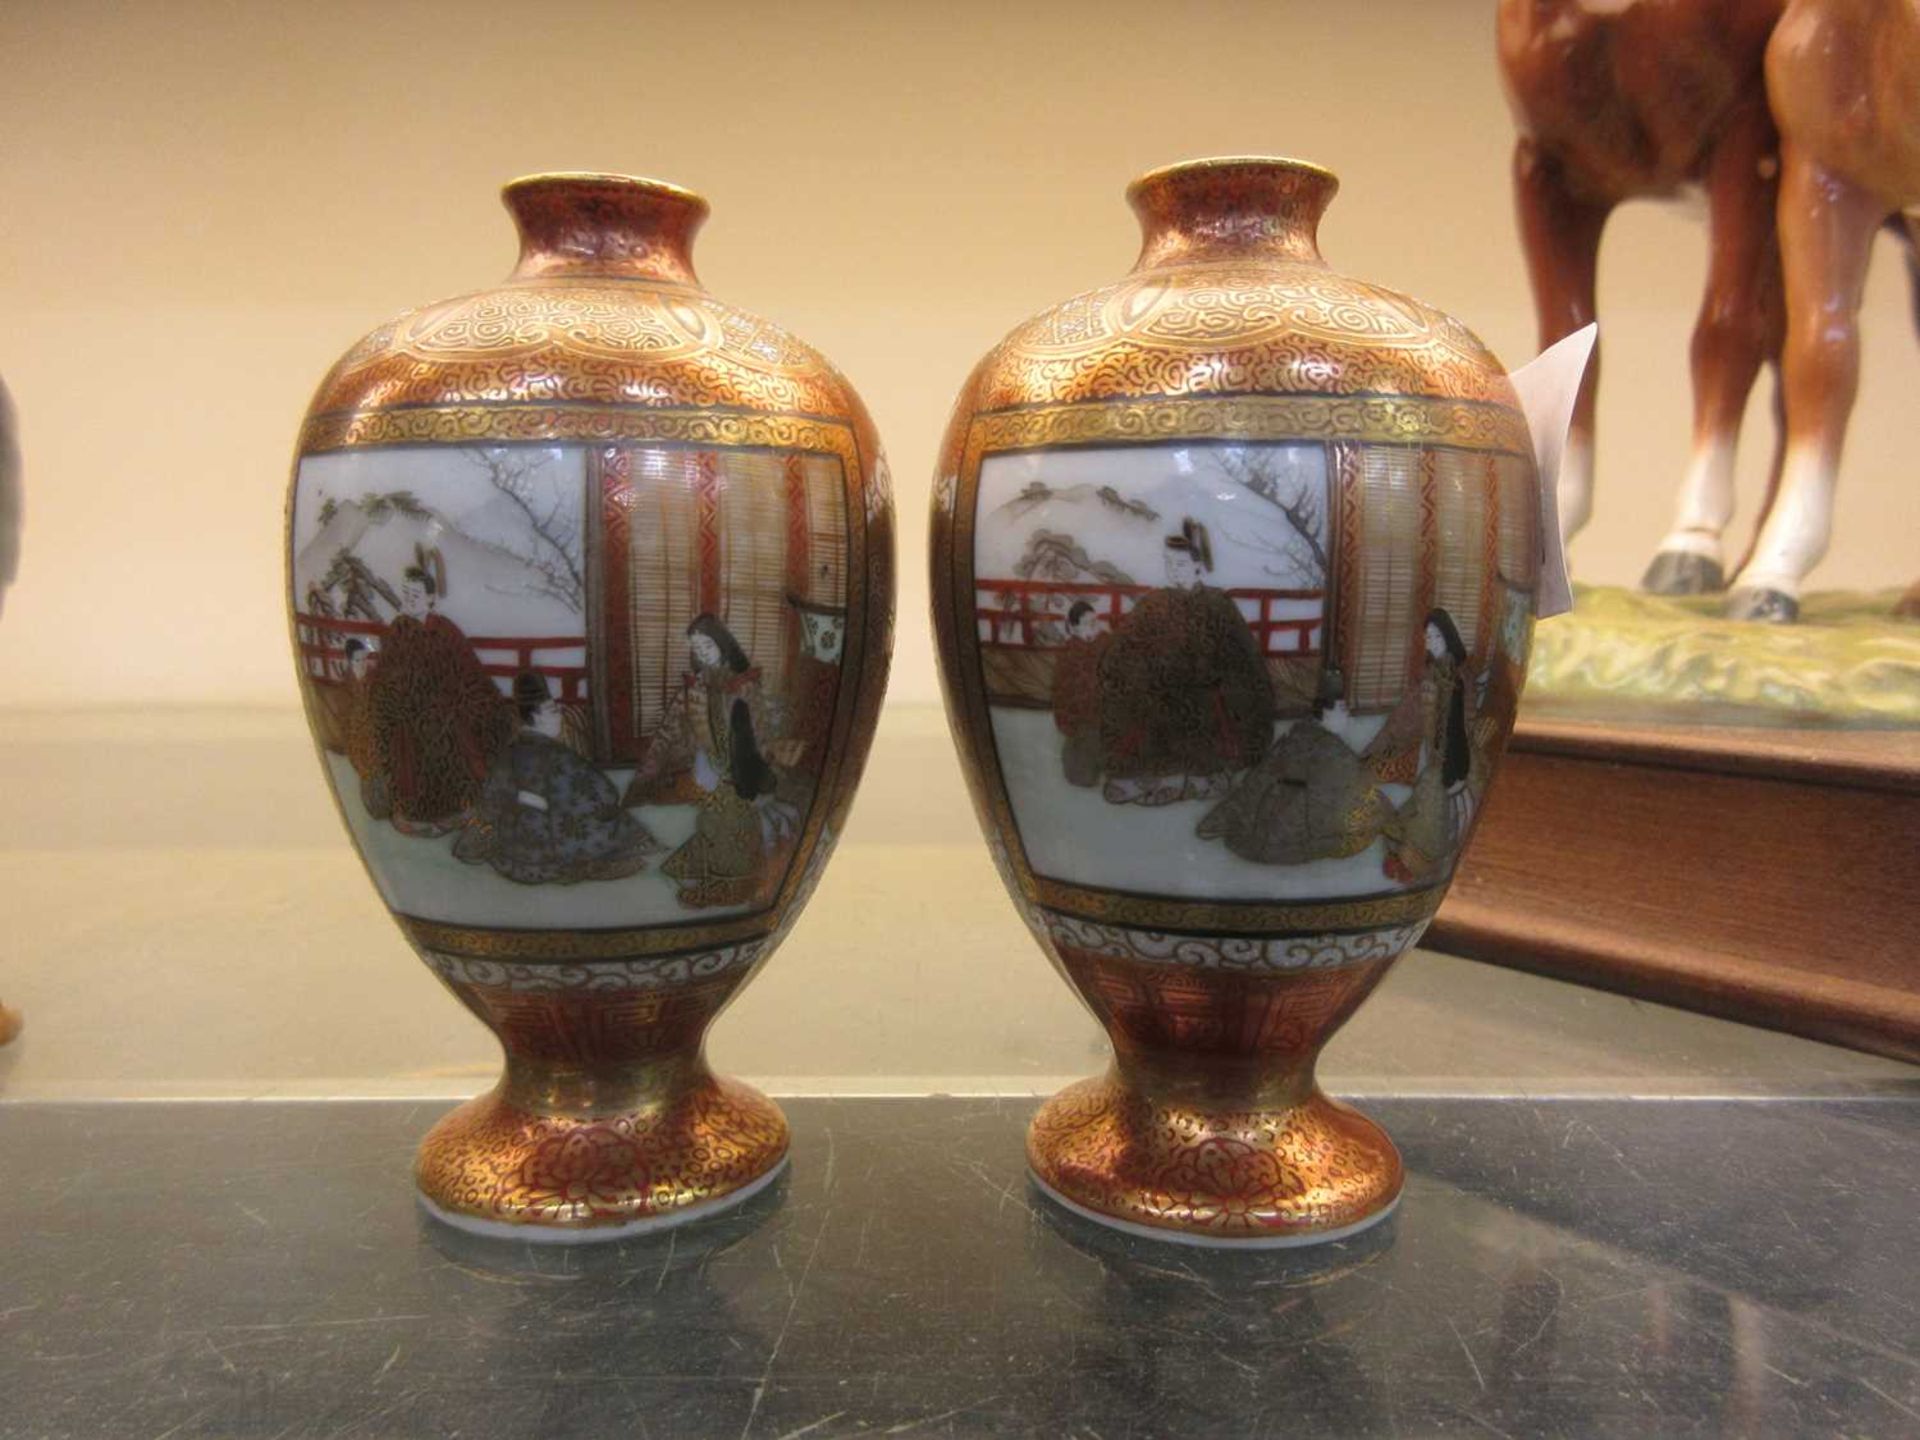 A pair of miniature Satsuma ware bud vases depicting interior scenes